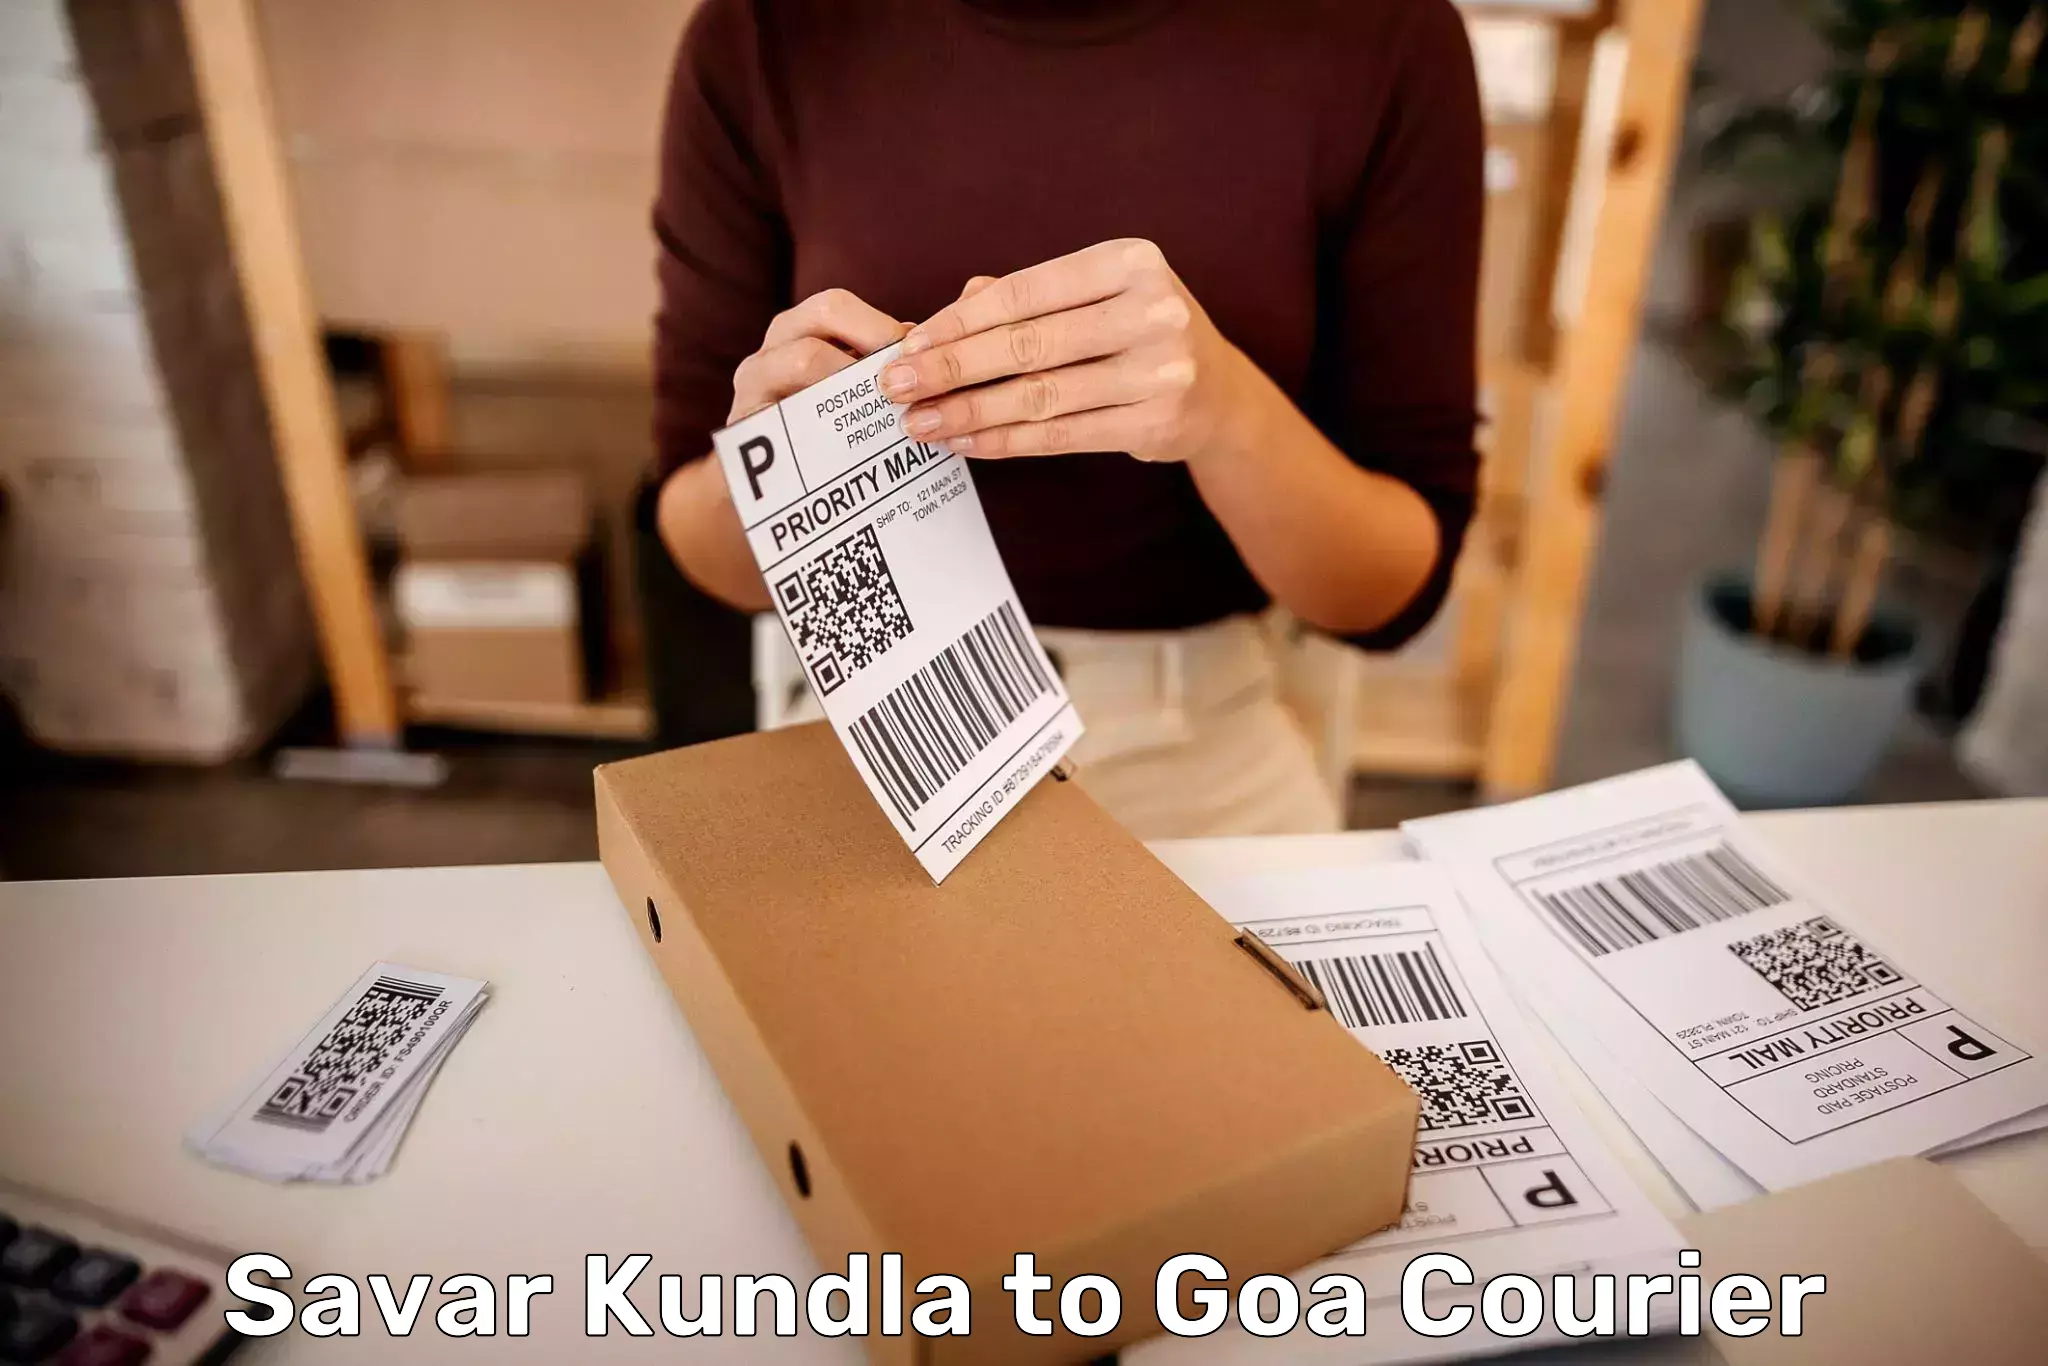 Premium luggage delivery Savar Kundla to IIT Goa